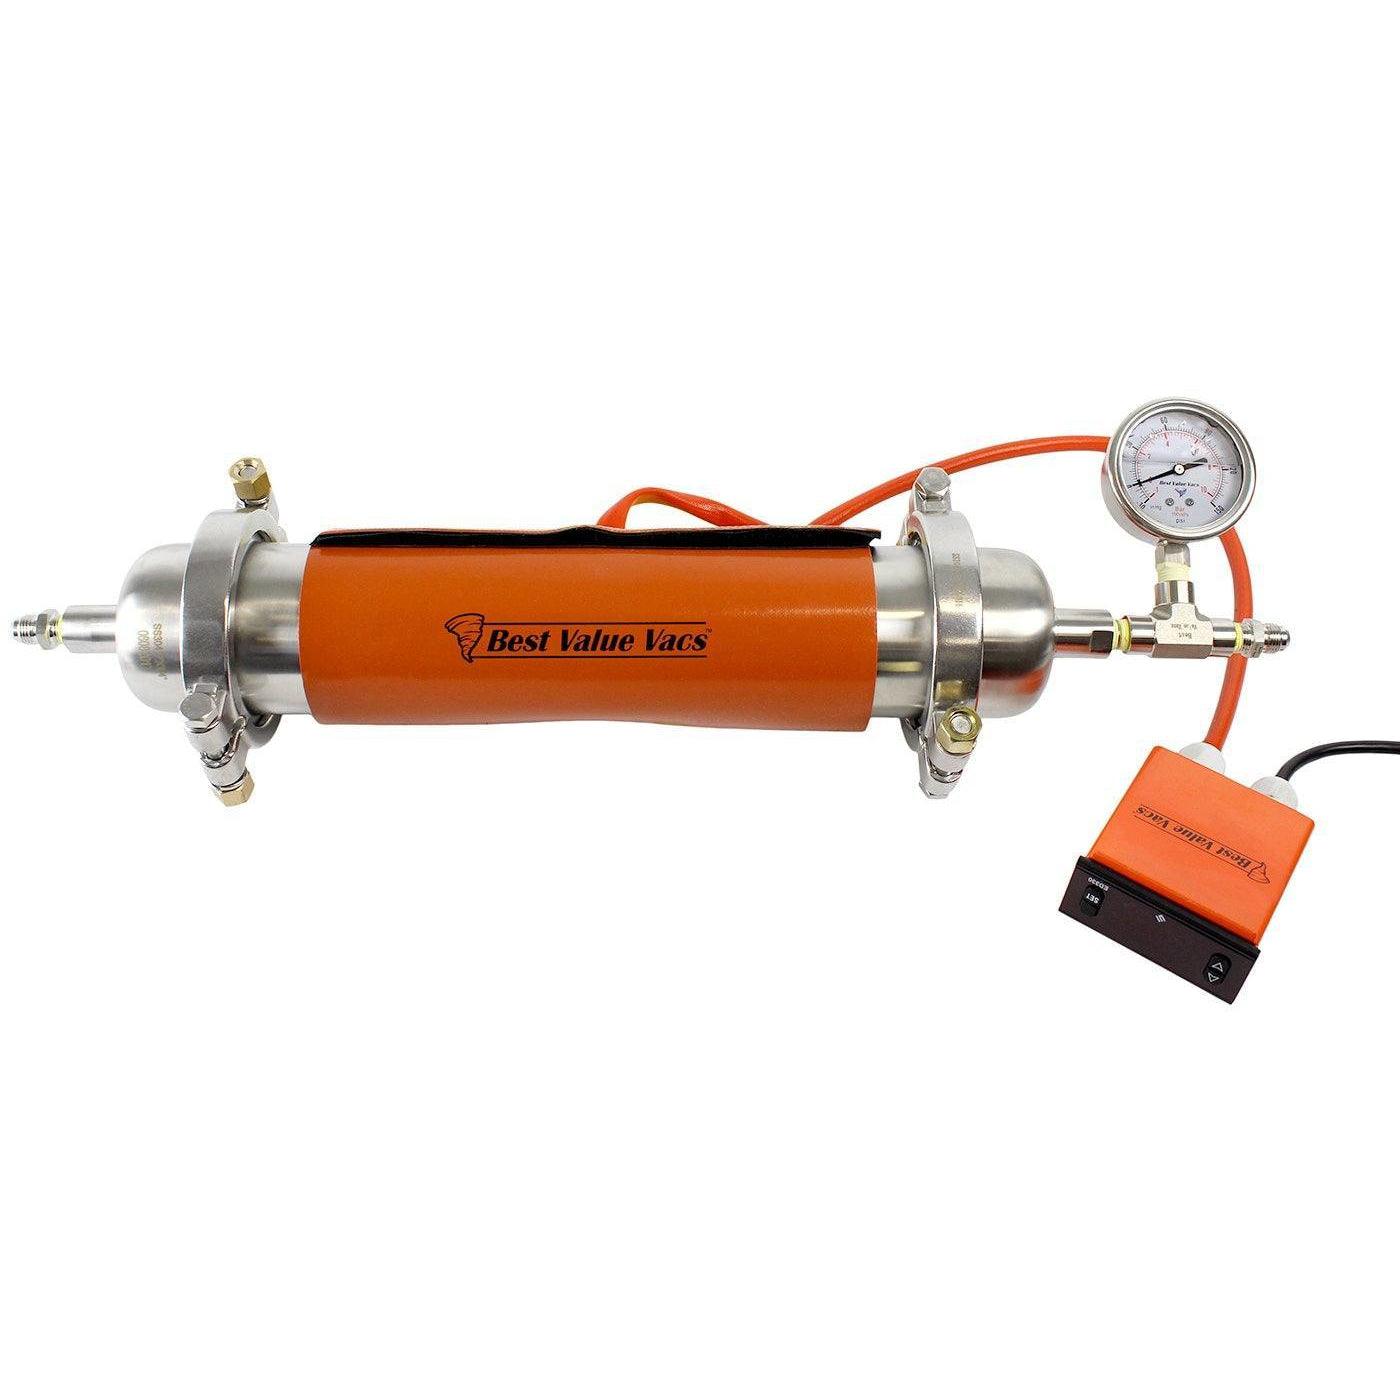 Molecular Sieve Filter Drier W/ Heating Jacket - BVV High Desert Scientific